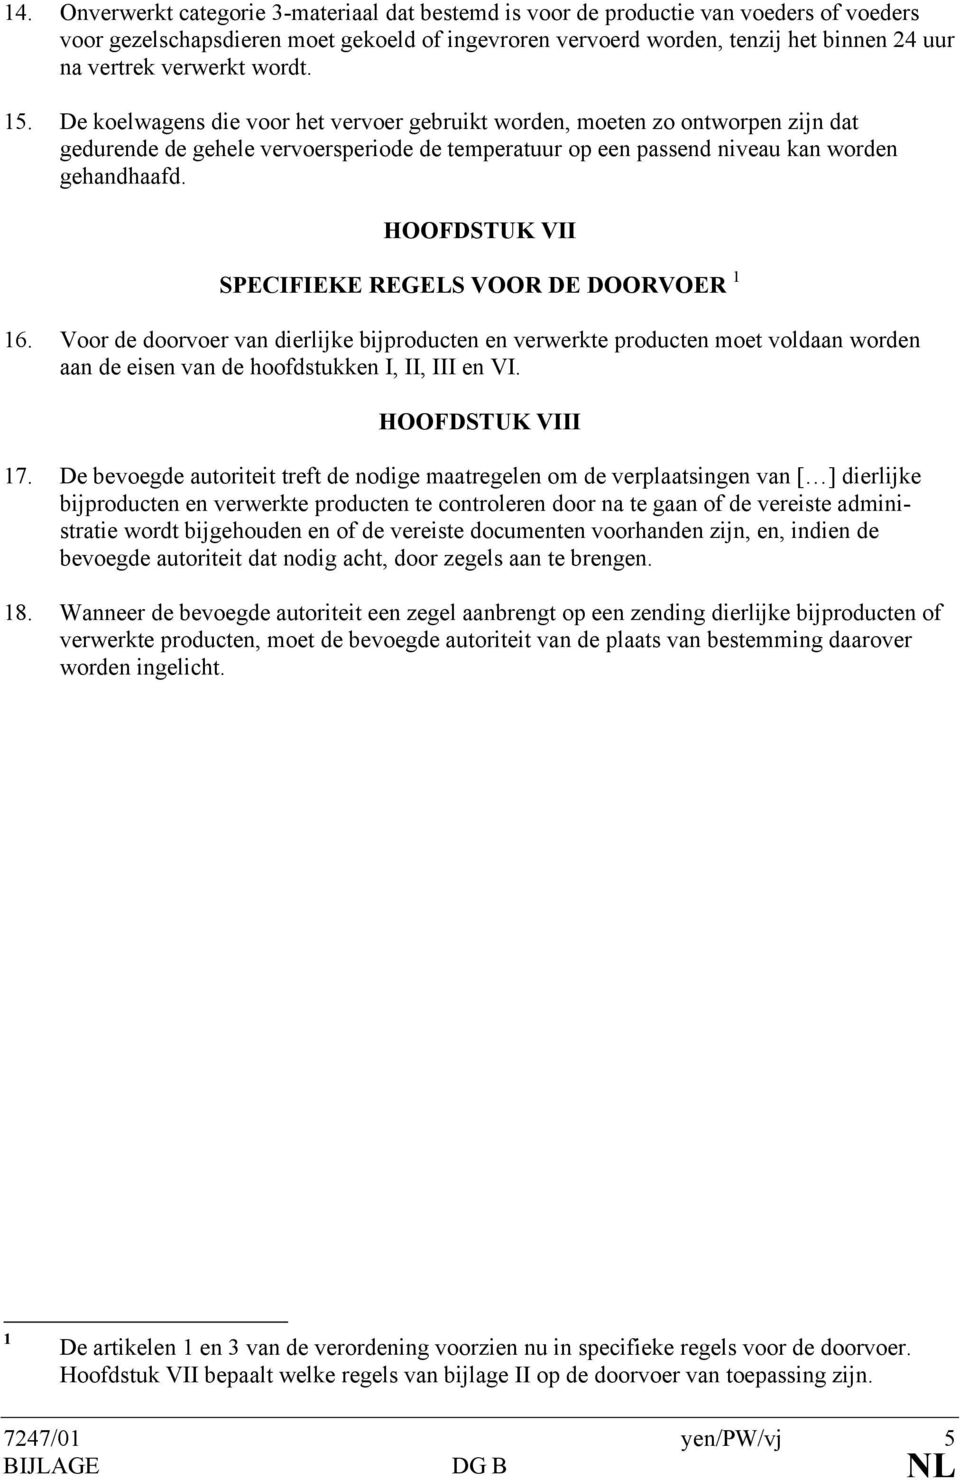 HOOFDSTUK VII SPECIFIEKE REGELS VOOR DE DOORVOER 6. Voor de doorvoer van dierlijke bijproducten en verwerkte producten moet voldaan worden aan de eisen van de hoofdstukken I, II, III en VI.